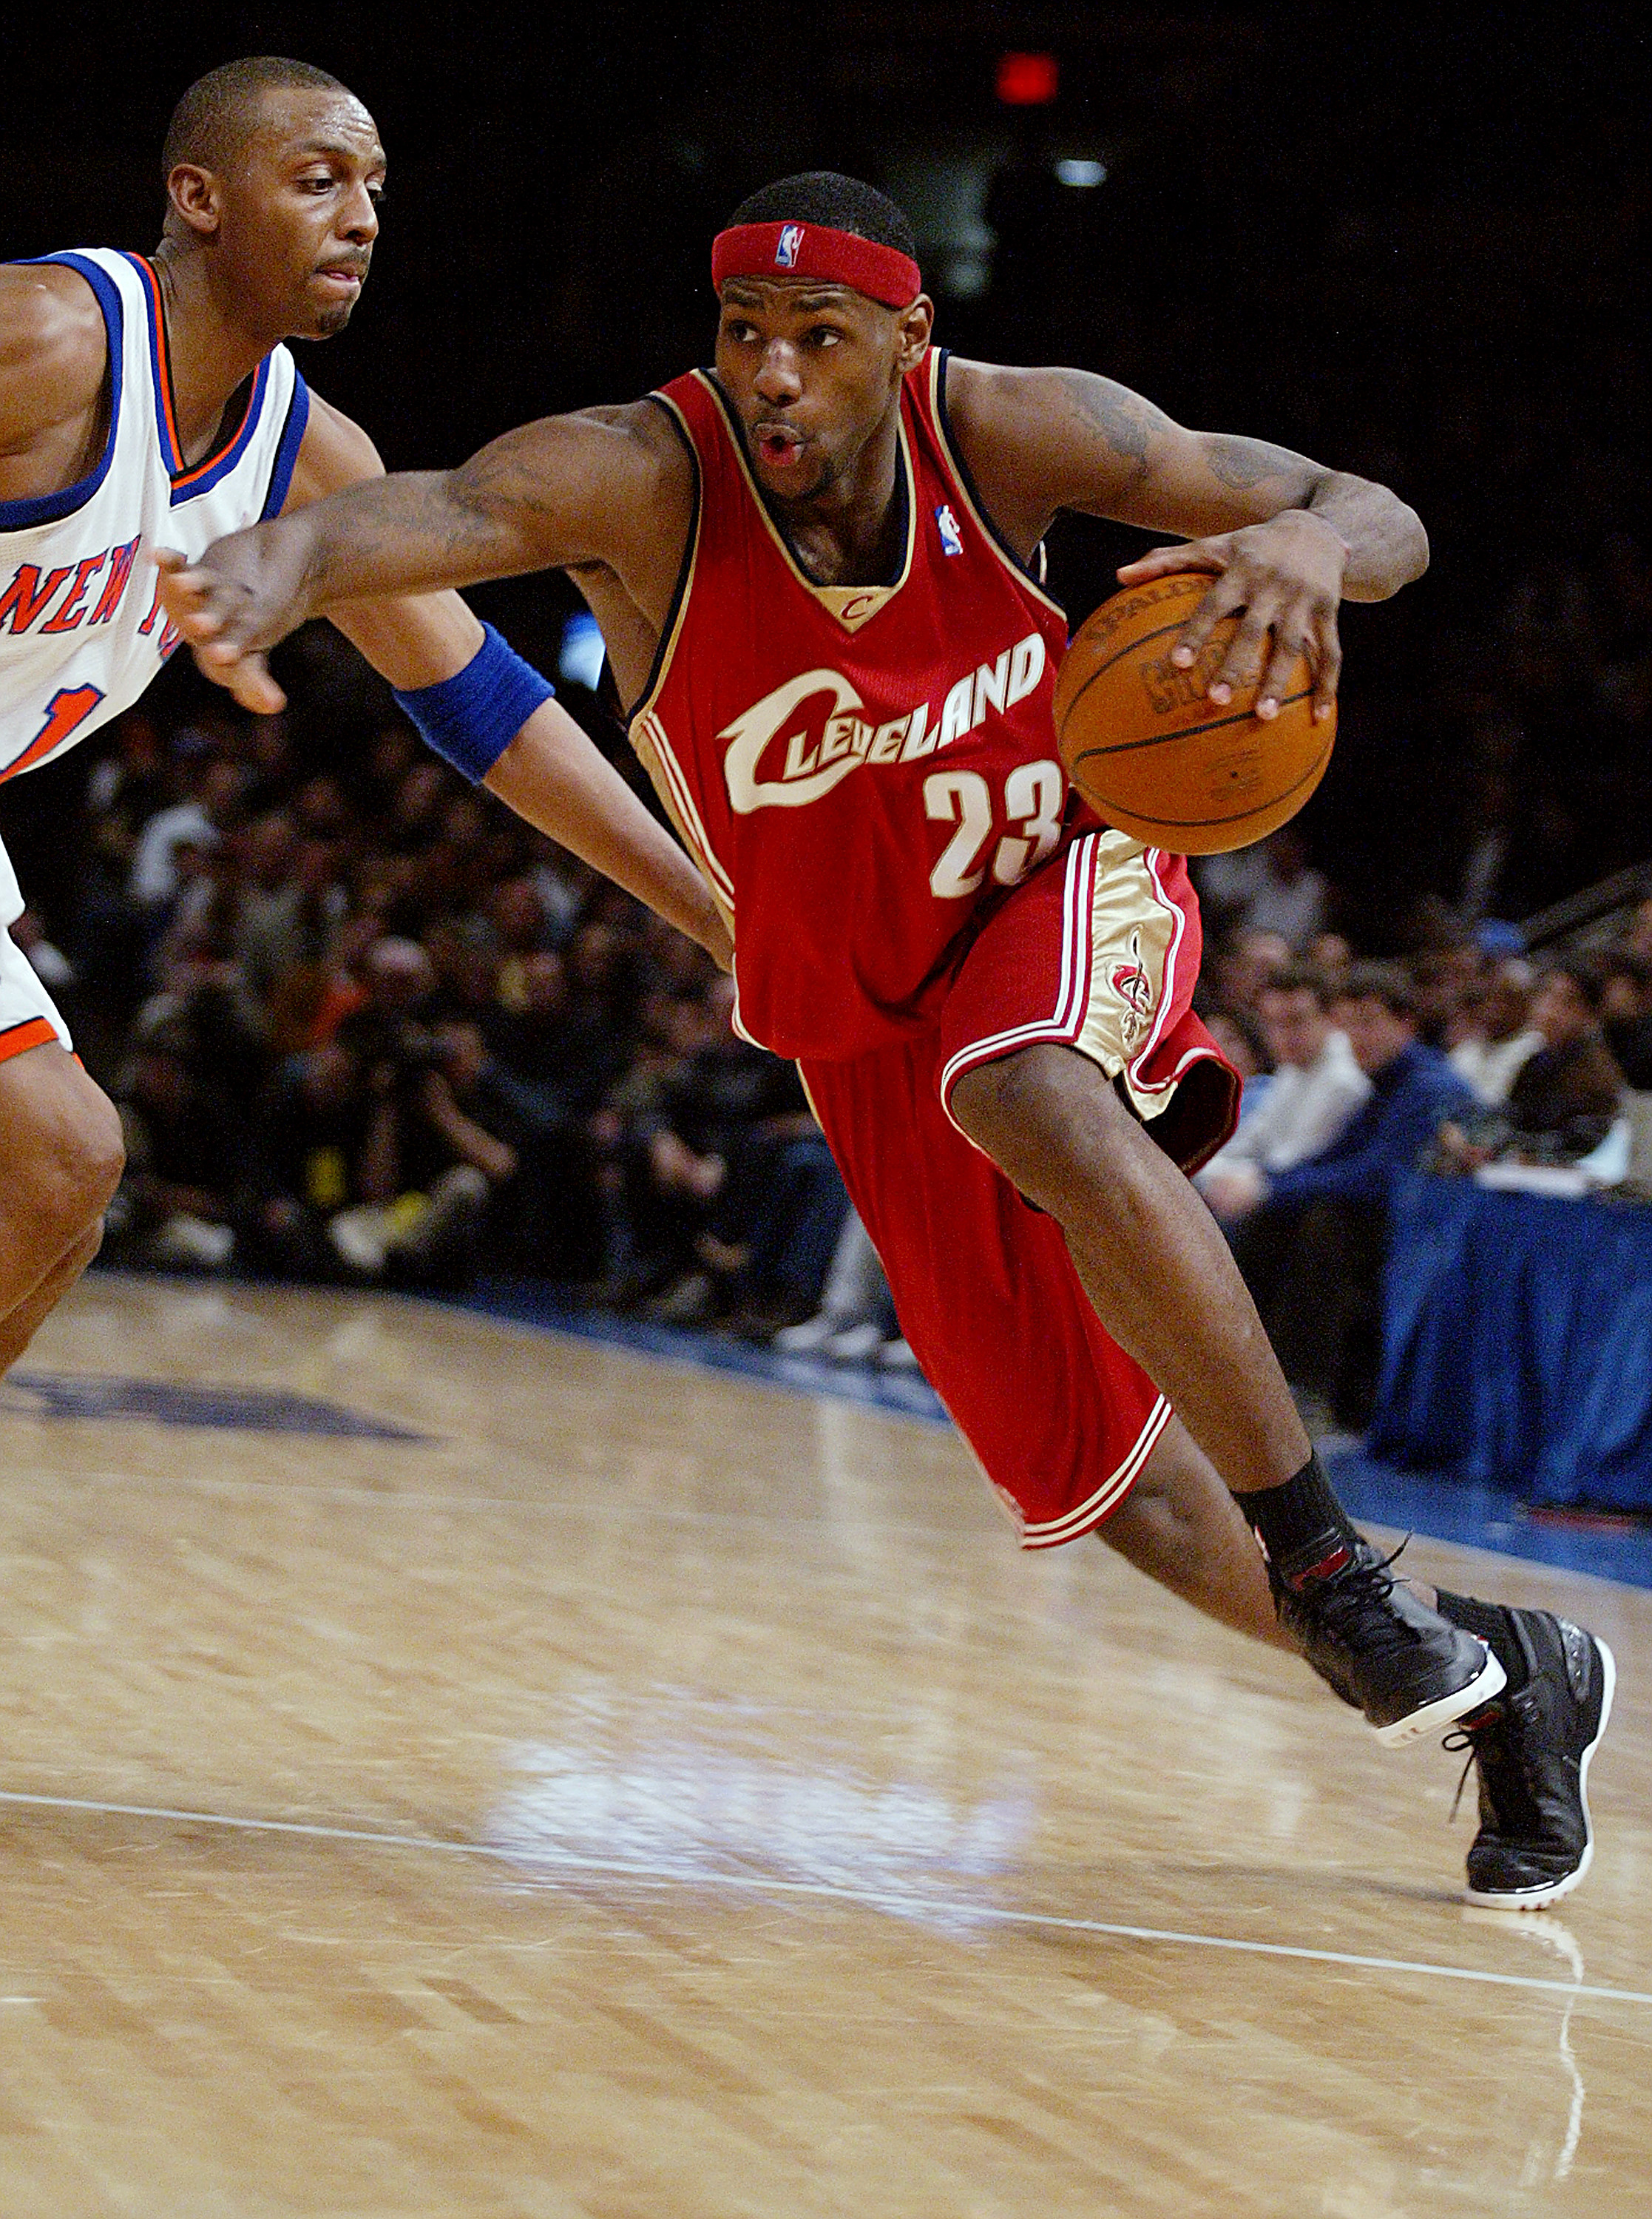 LeBron James al principio de su carrera jugando para los Cleveland Cavaliers hacia 2002 | Foto: Getty Images